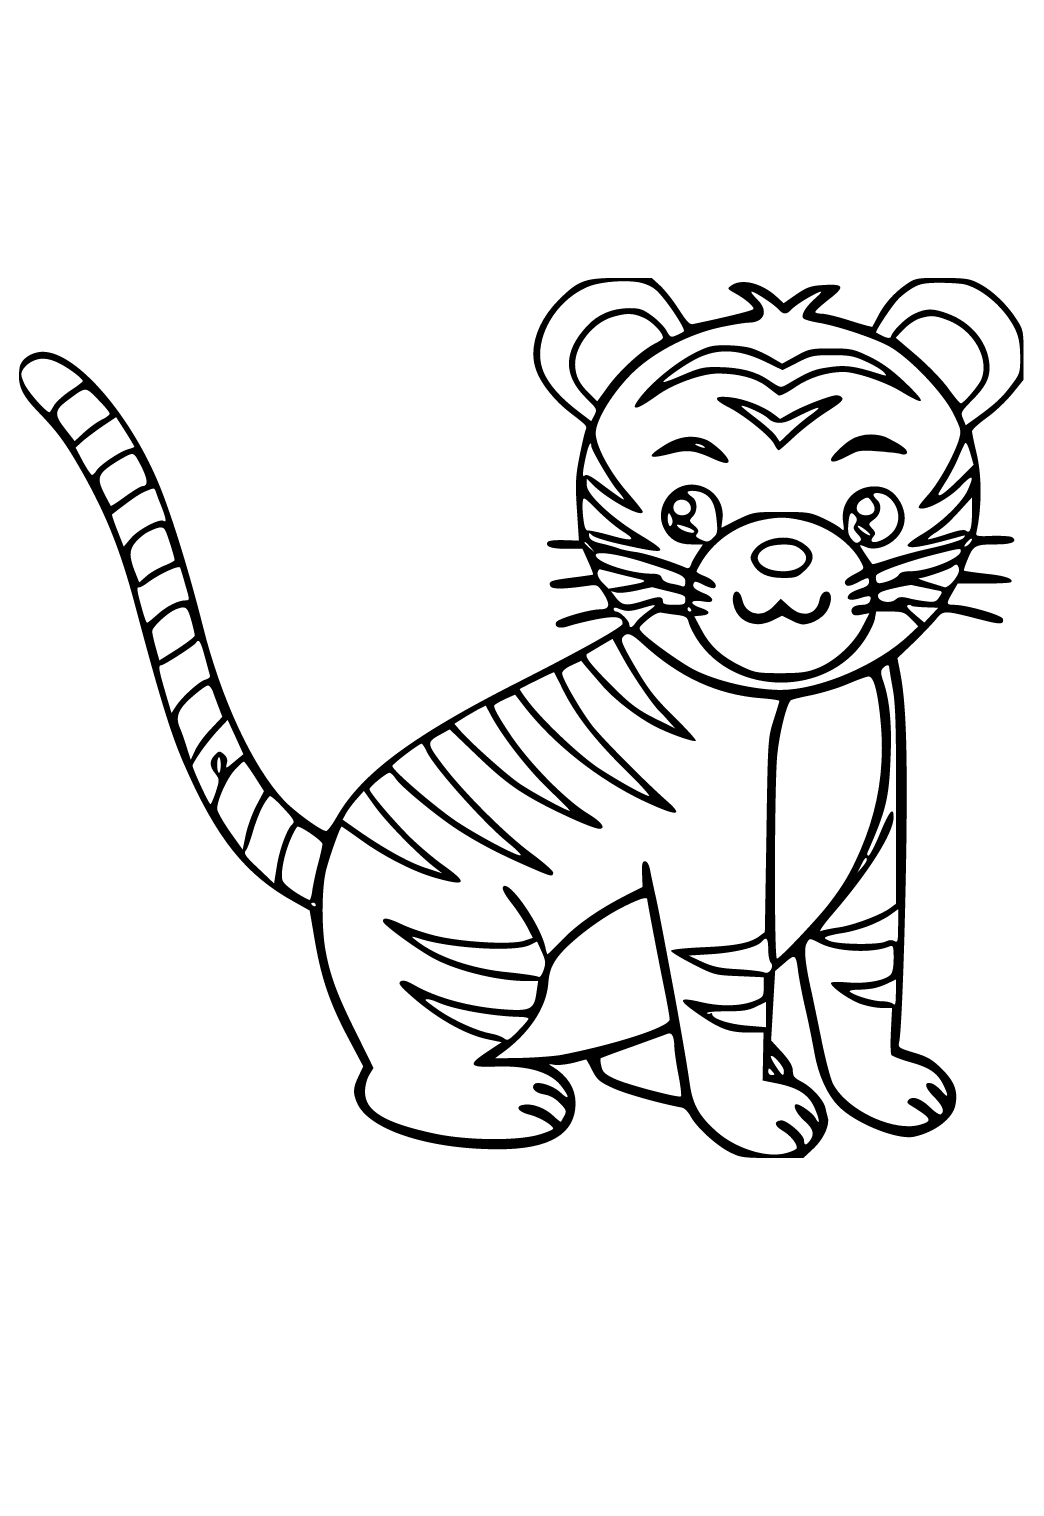 Dibujo e Imagen Tigre Fácil para Colorear y Imprimir Gratis para Adultos,  Niñas y Niños 